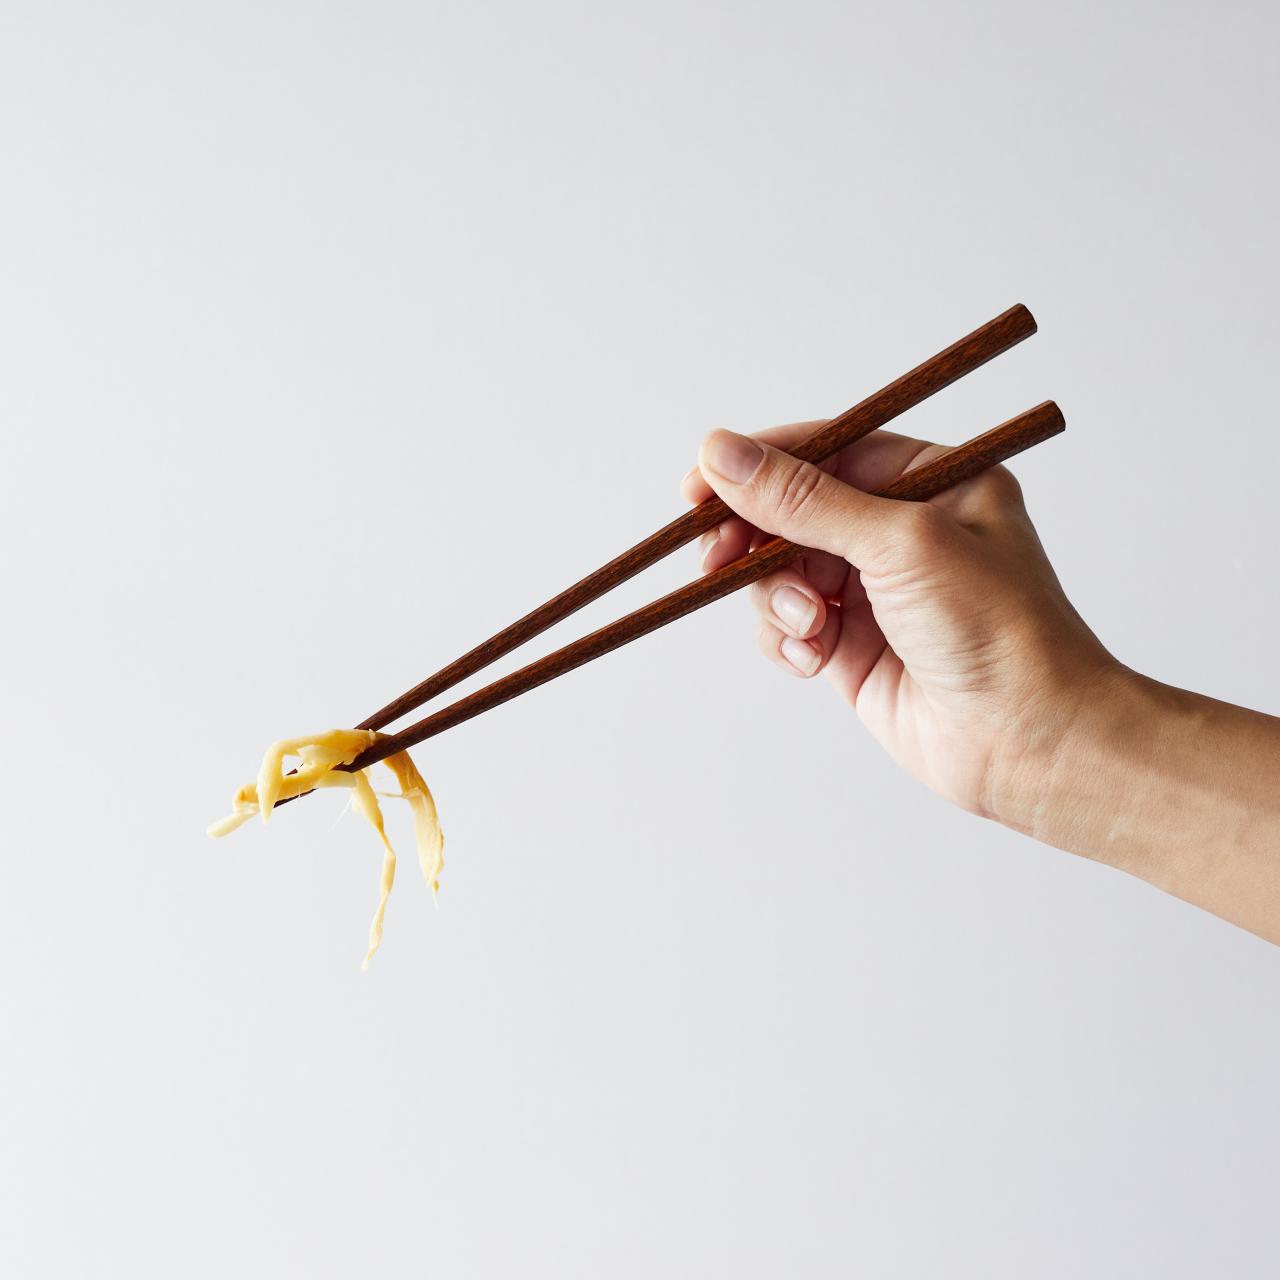 A Guide To Chopsticks, What Are Chopsticks?